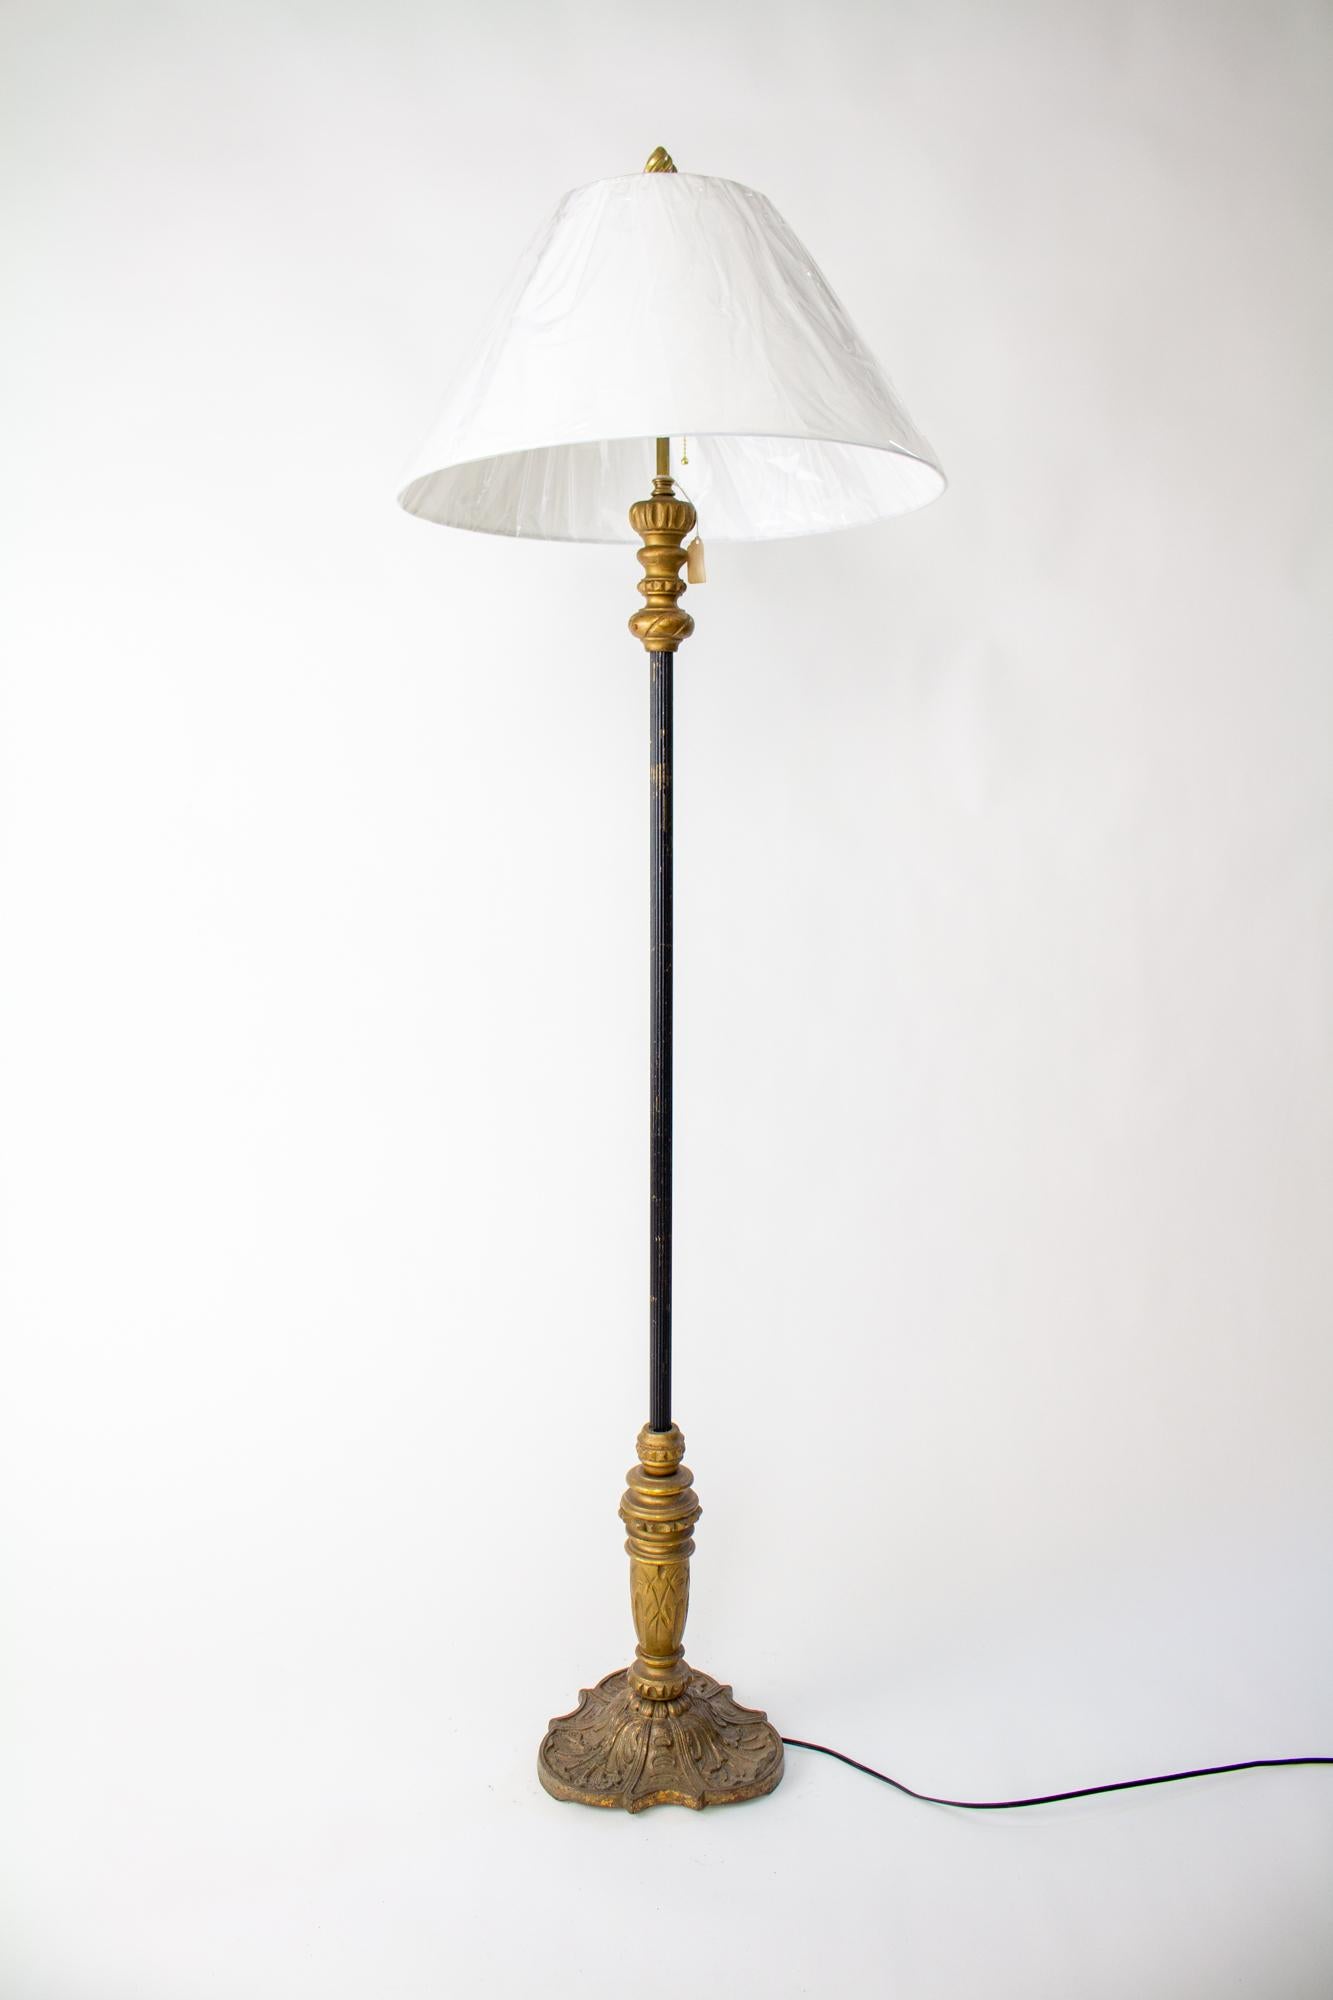 Stehlampe aus Goldholz und Metall aus dem frühen 20. Jahrhundert mit zwei Lichtbündeln. Spanischer Revival-Stil, würde einen Raum mit viktorianischem, Revival- oder Bohème-Stil akzentuieren. Giltwood mit originalem Finish, in einem dunklen Antikgold